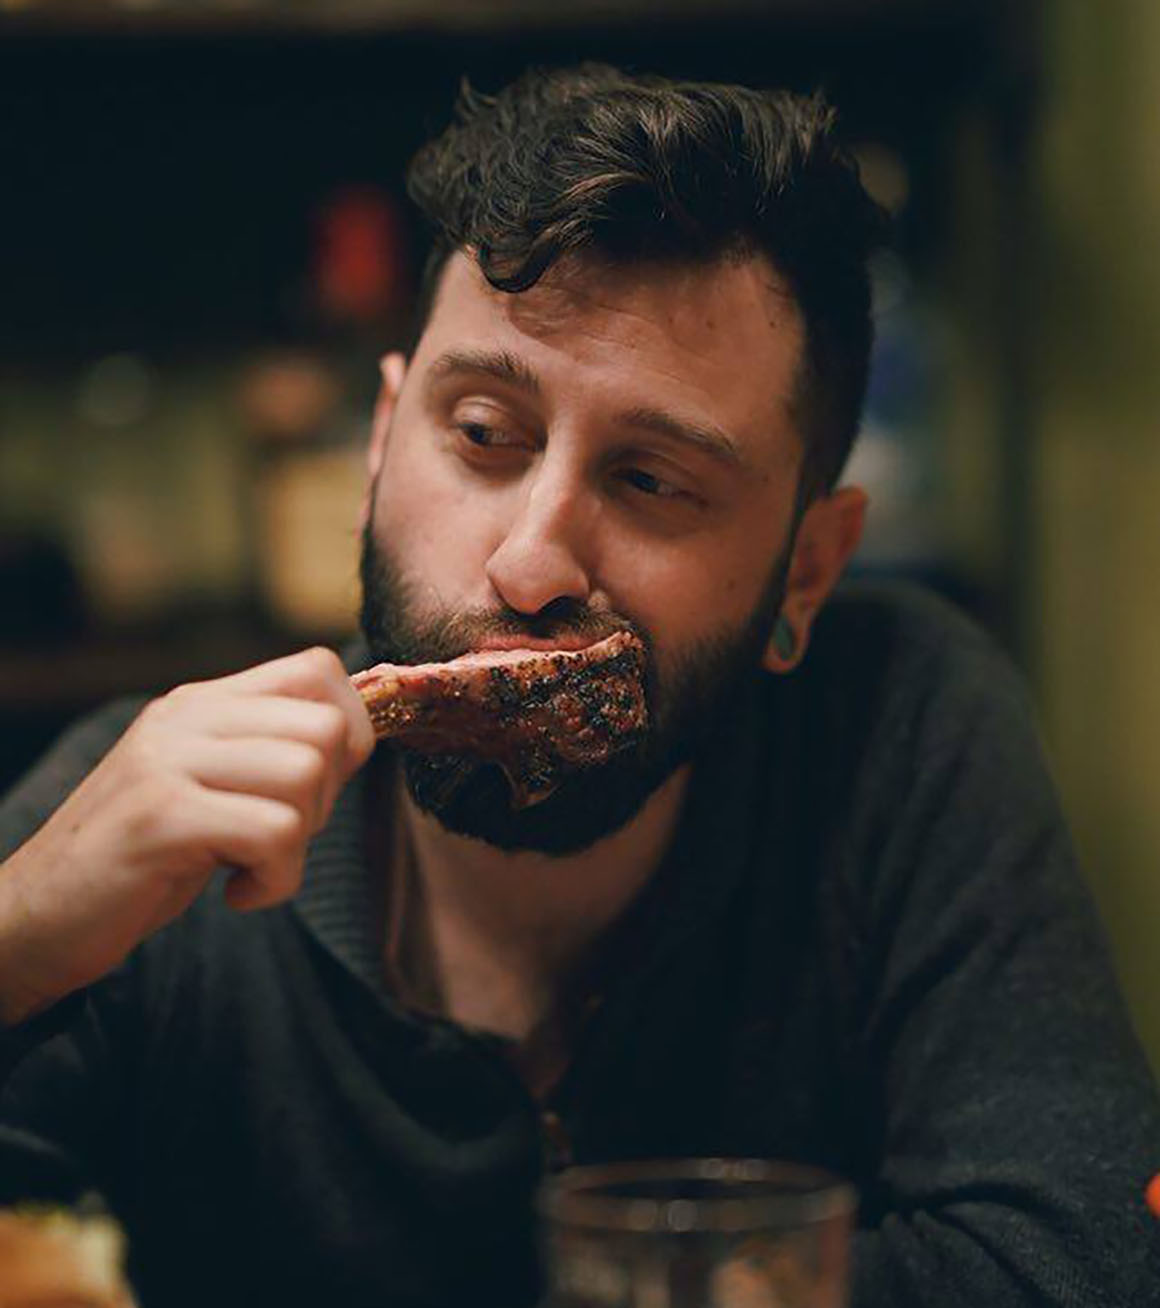 man eating grilled rib